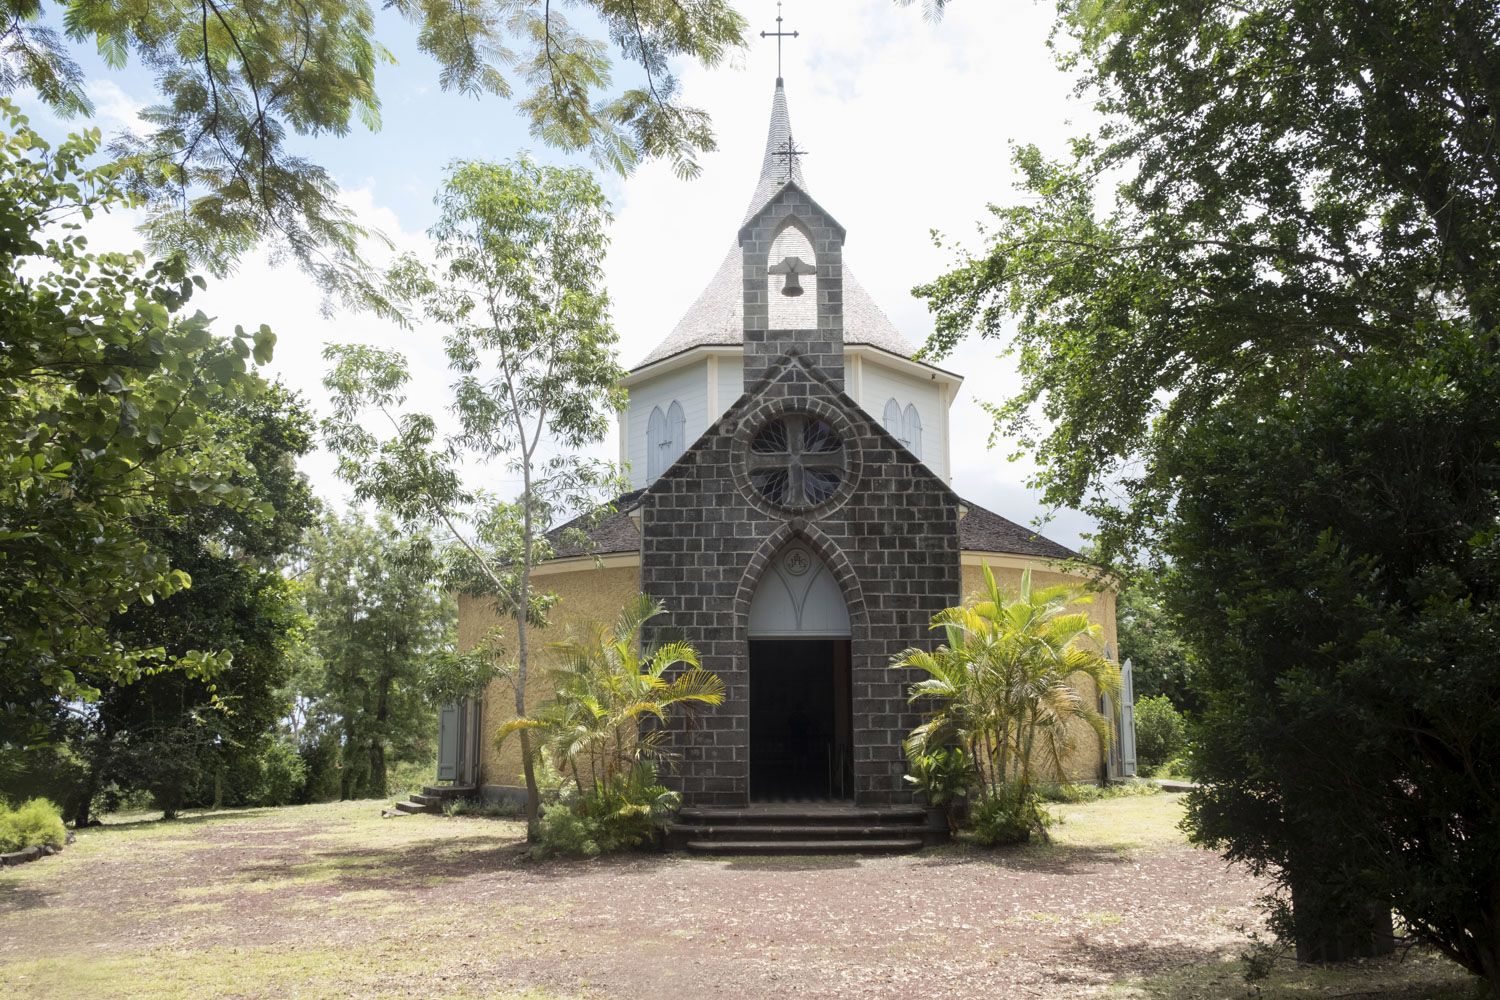 La chapelle pointue a été construite par Madame DESBASSAYNS pour les esclaves de sa propriété. L’évangélisation des esclaves était très importante dans la culture coloniale. Aujourd’hui, la dépouille de Mme DESBASSAYNS repose dans cette chapelle.